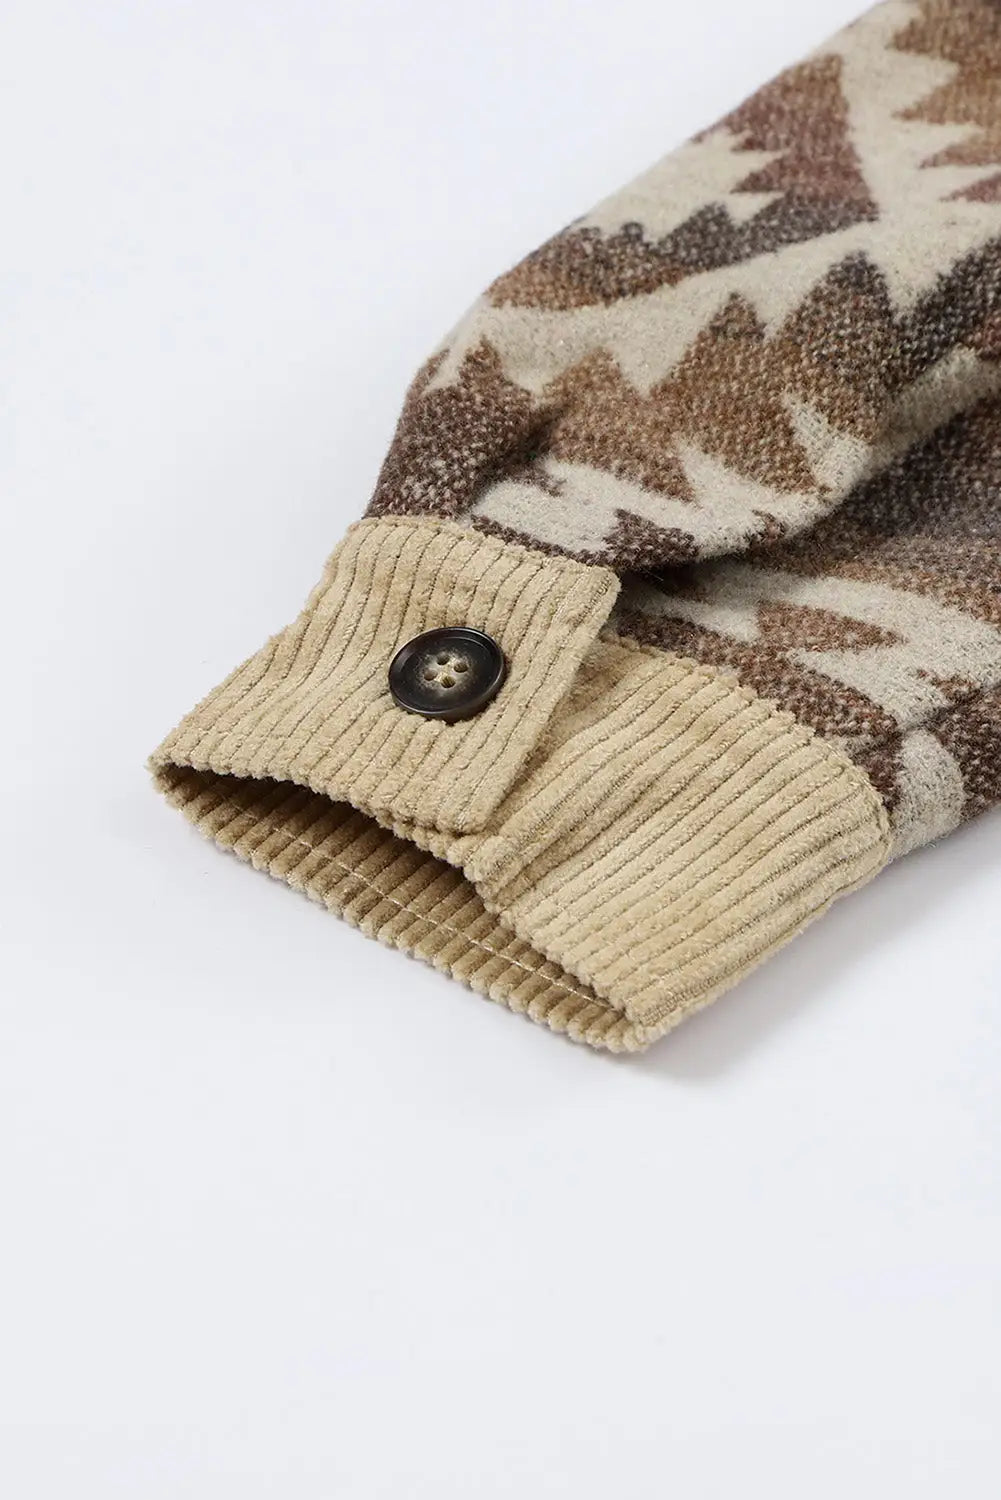 Khaki aztec print patchwork frayed edge corduroy jacket - jackets